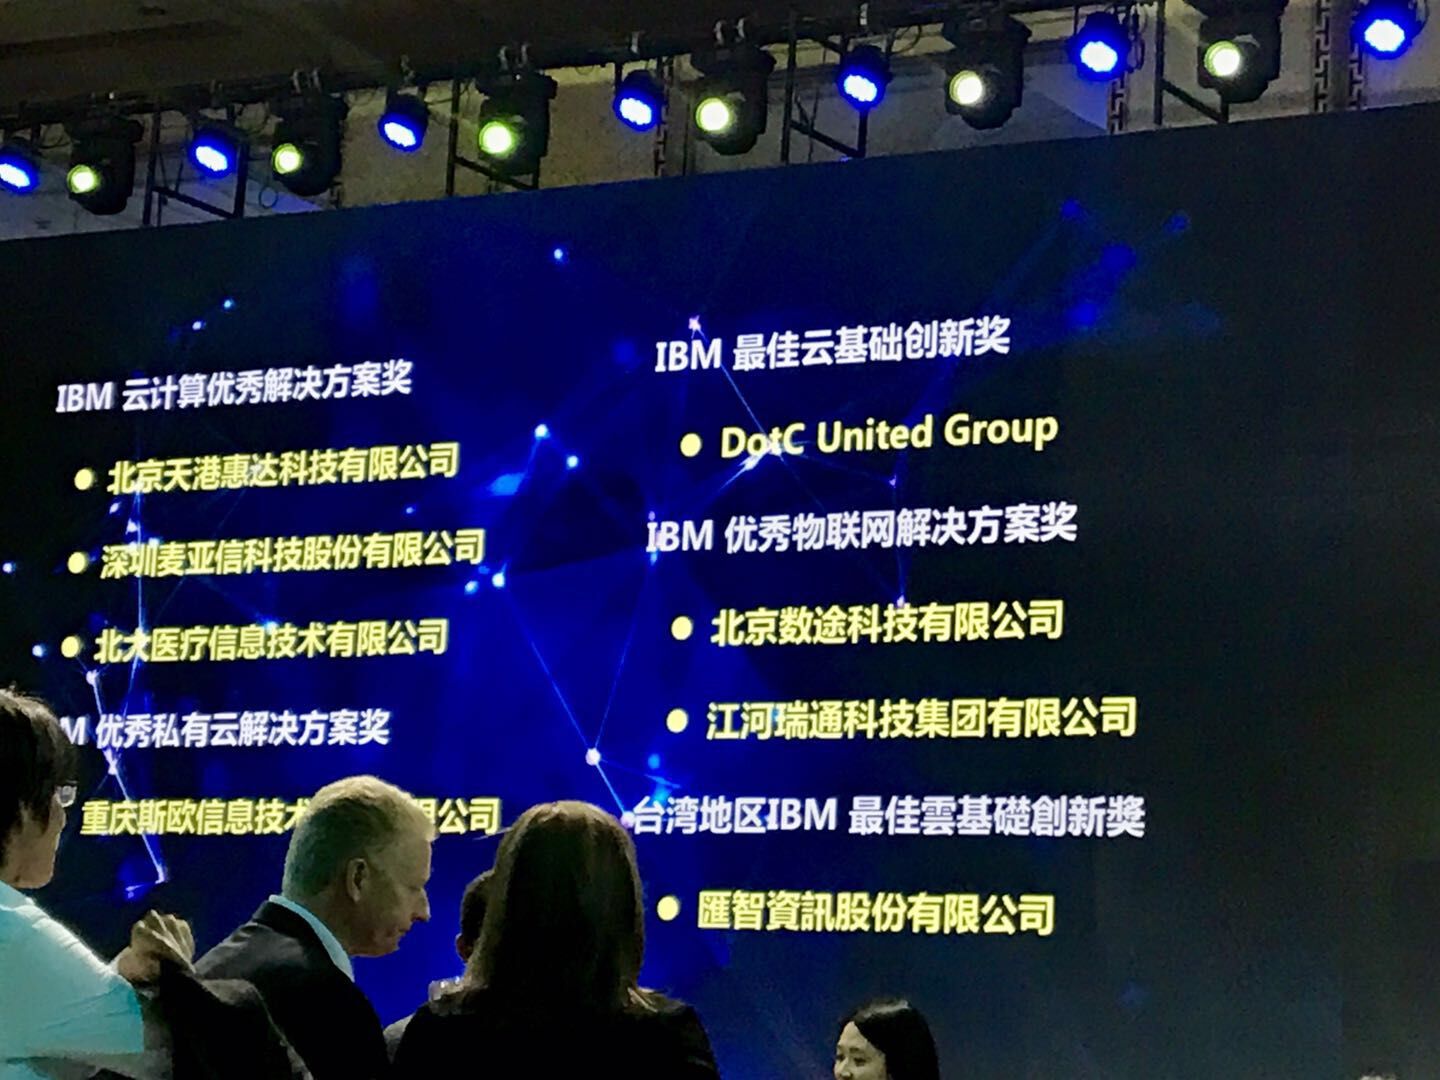 石一携DotC United Group斩获IBM最佳云基础创新奖